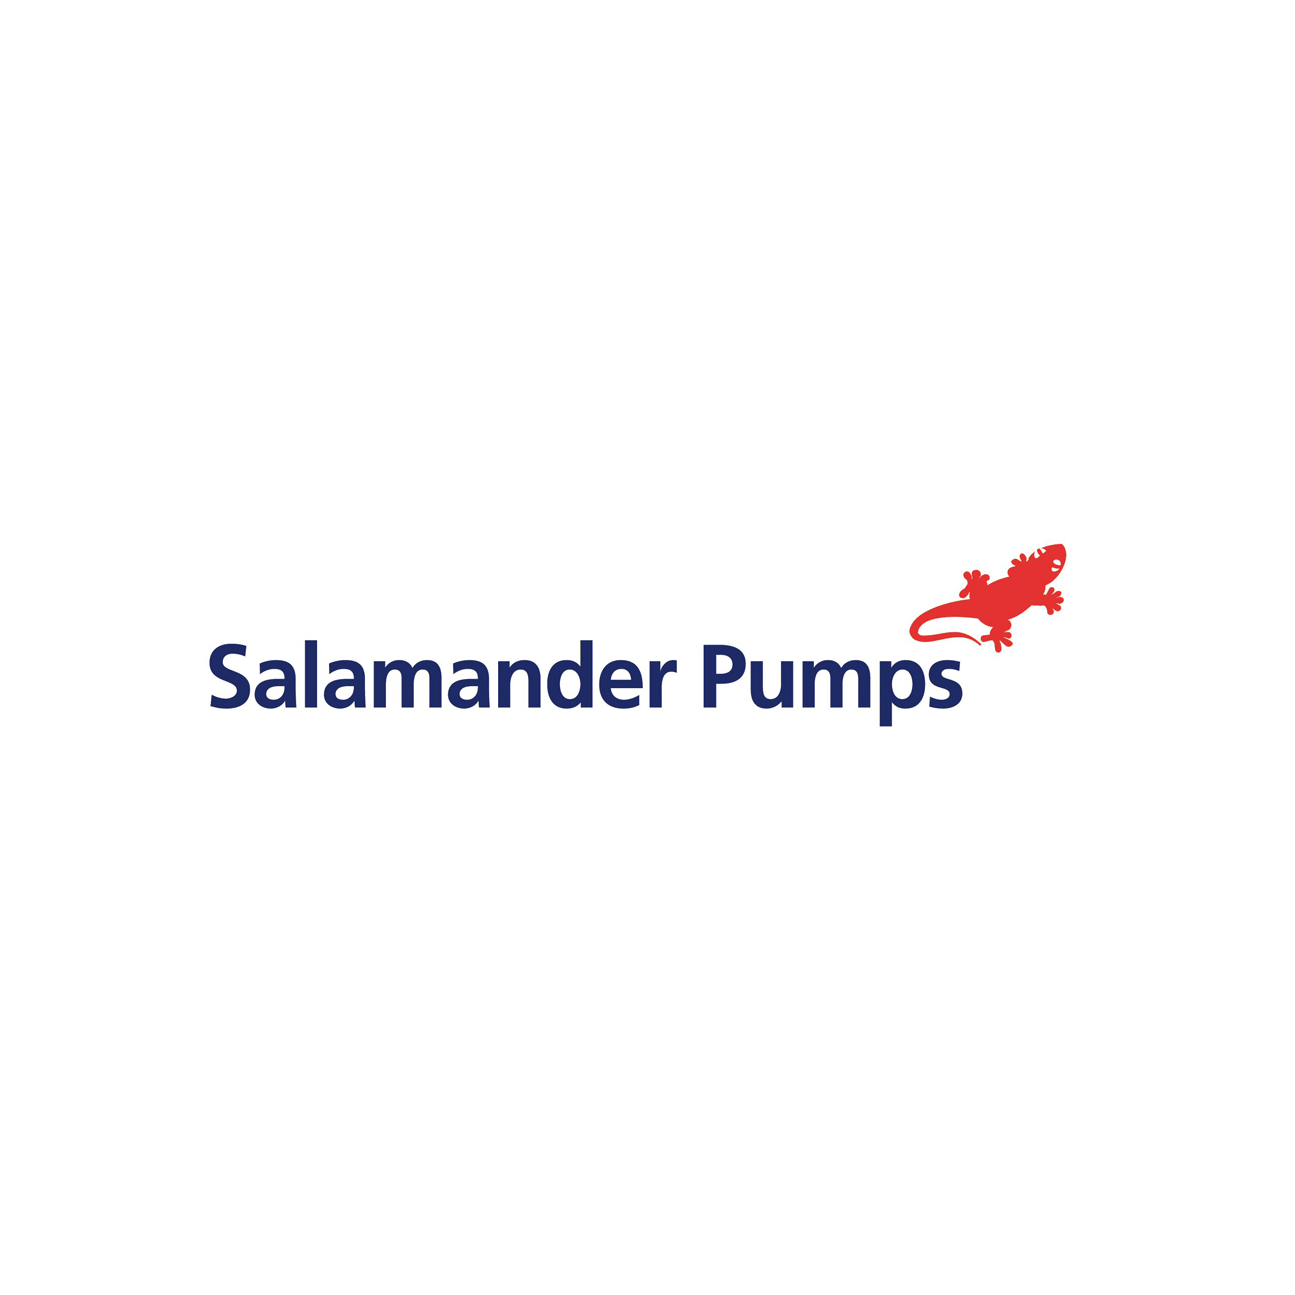 Salamander-logo